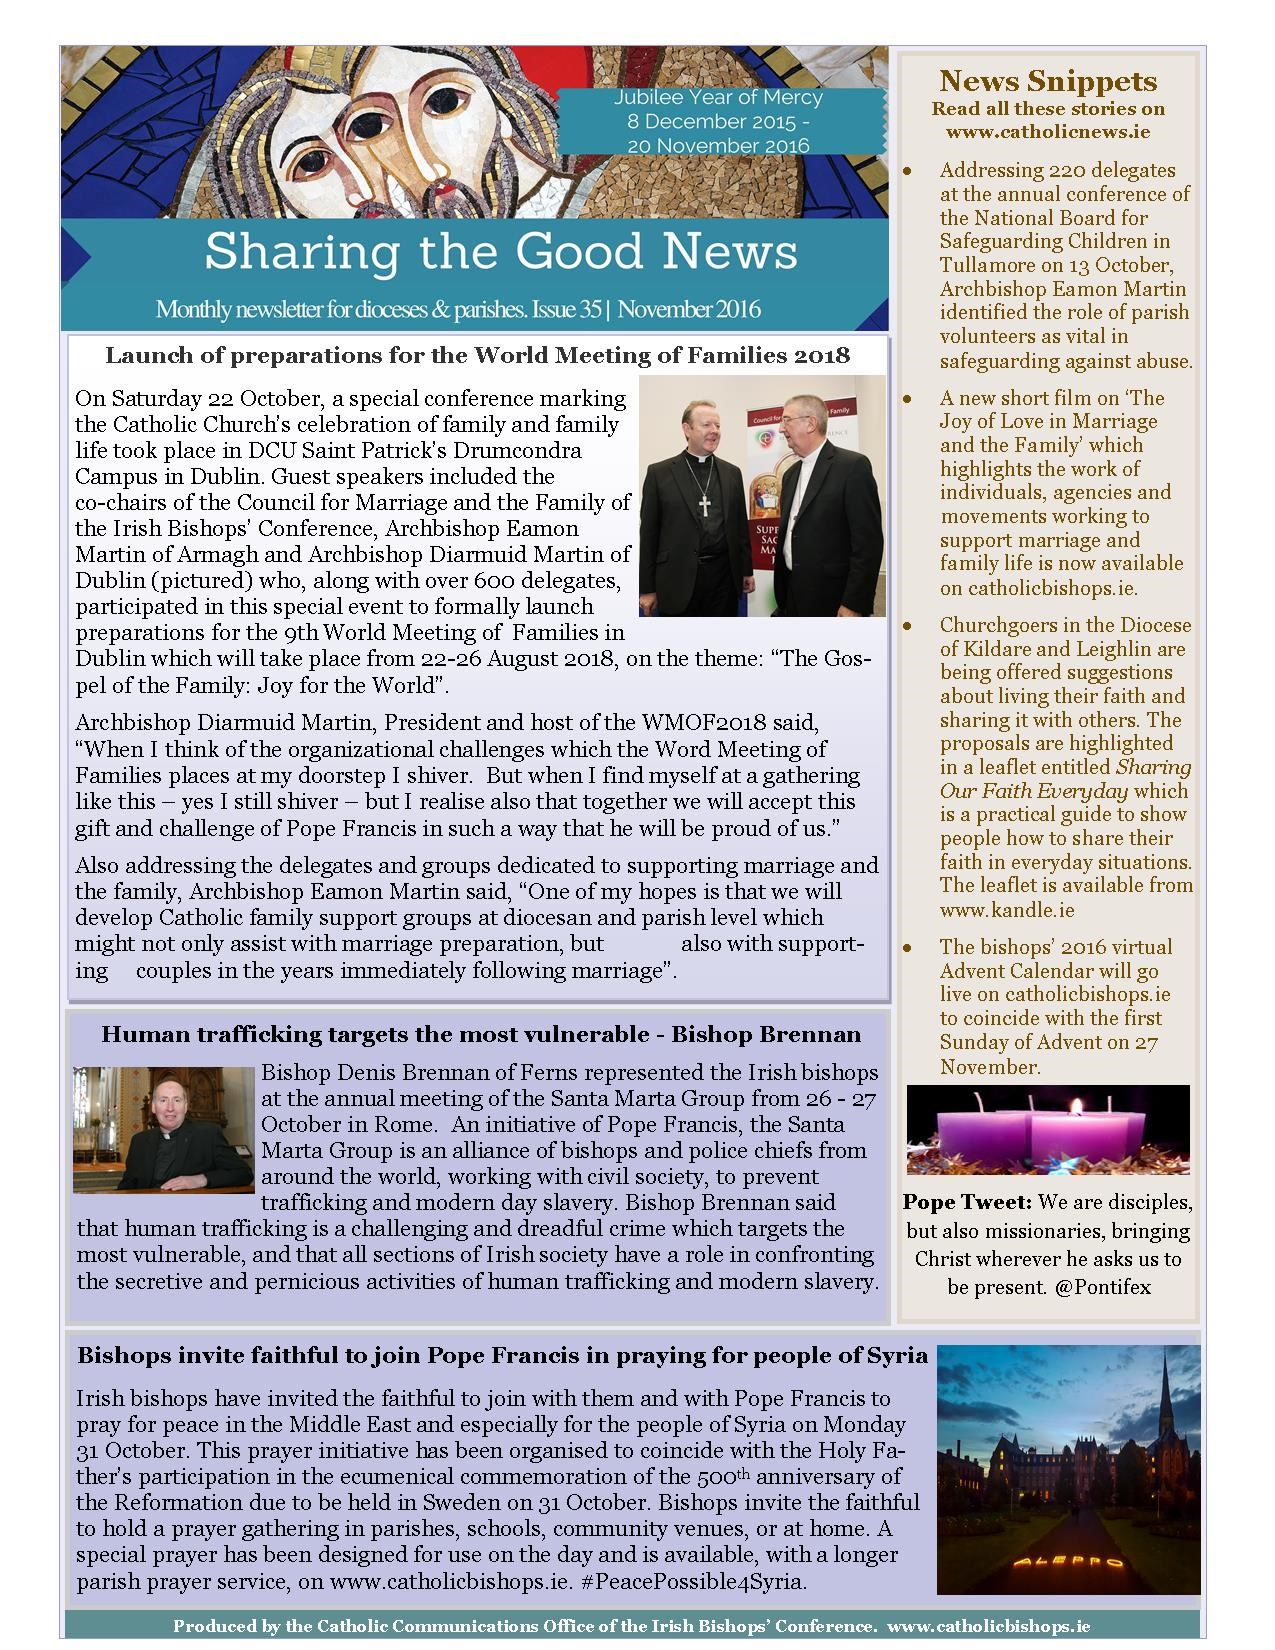 sharing-the-good-news-november-2016